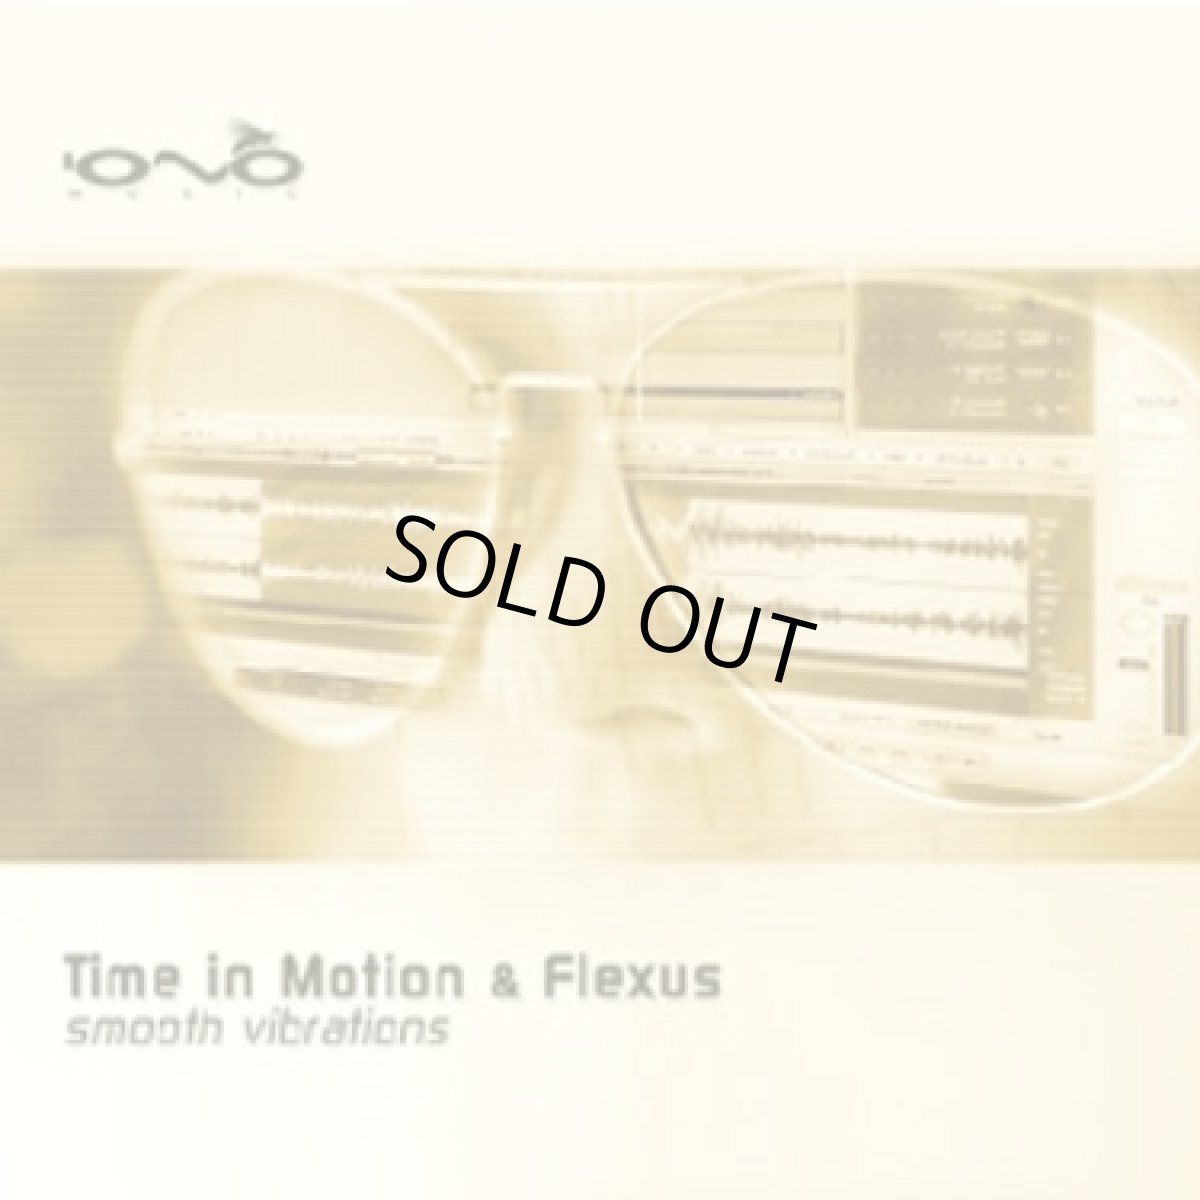 画像1: CD「Time in Motion & Flexus / Smooth Vibrations」 (1)